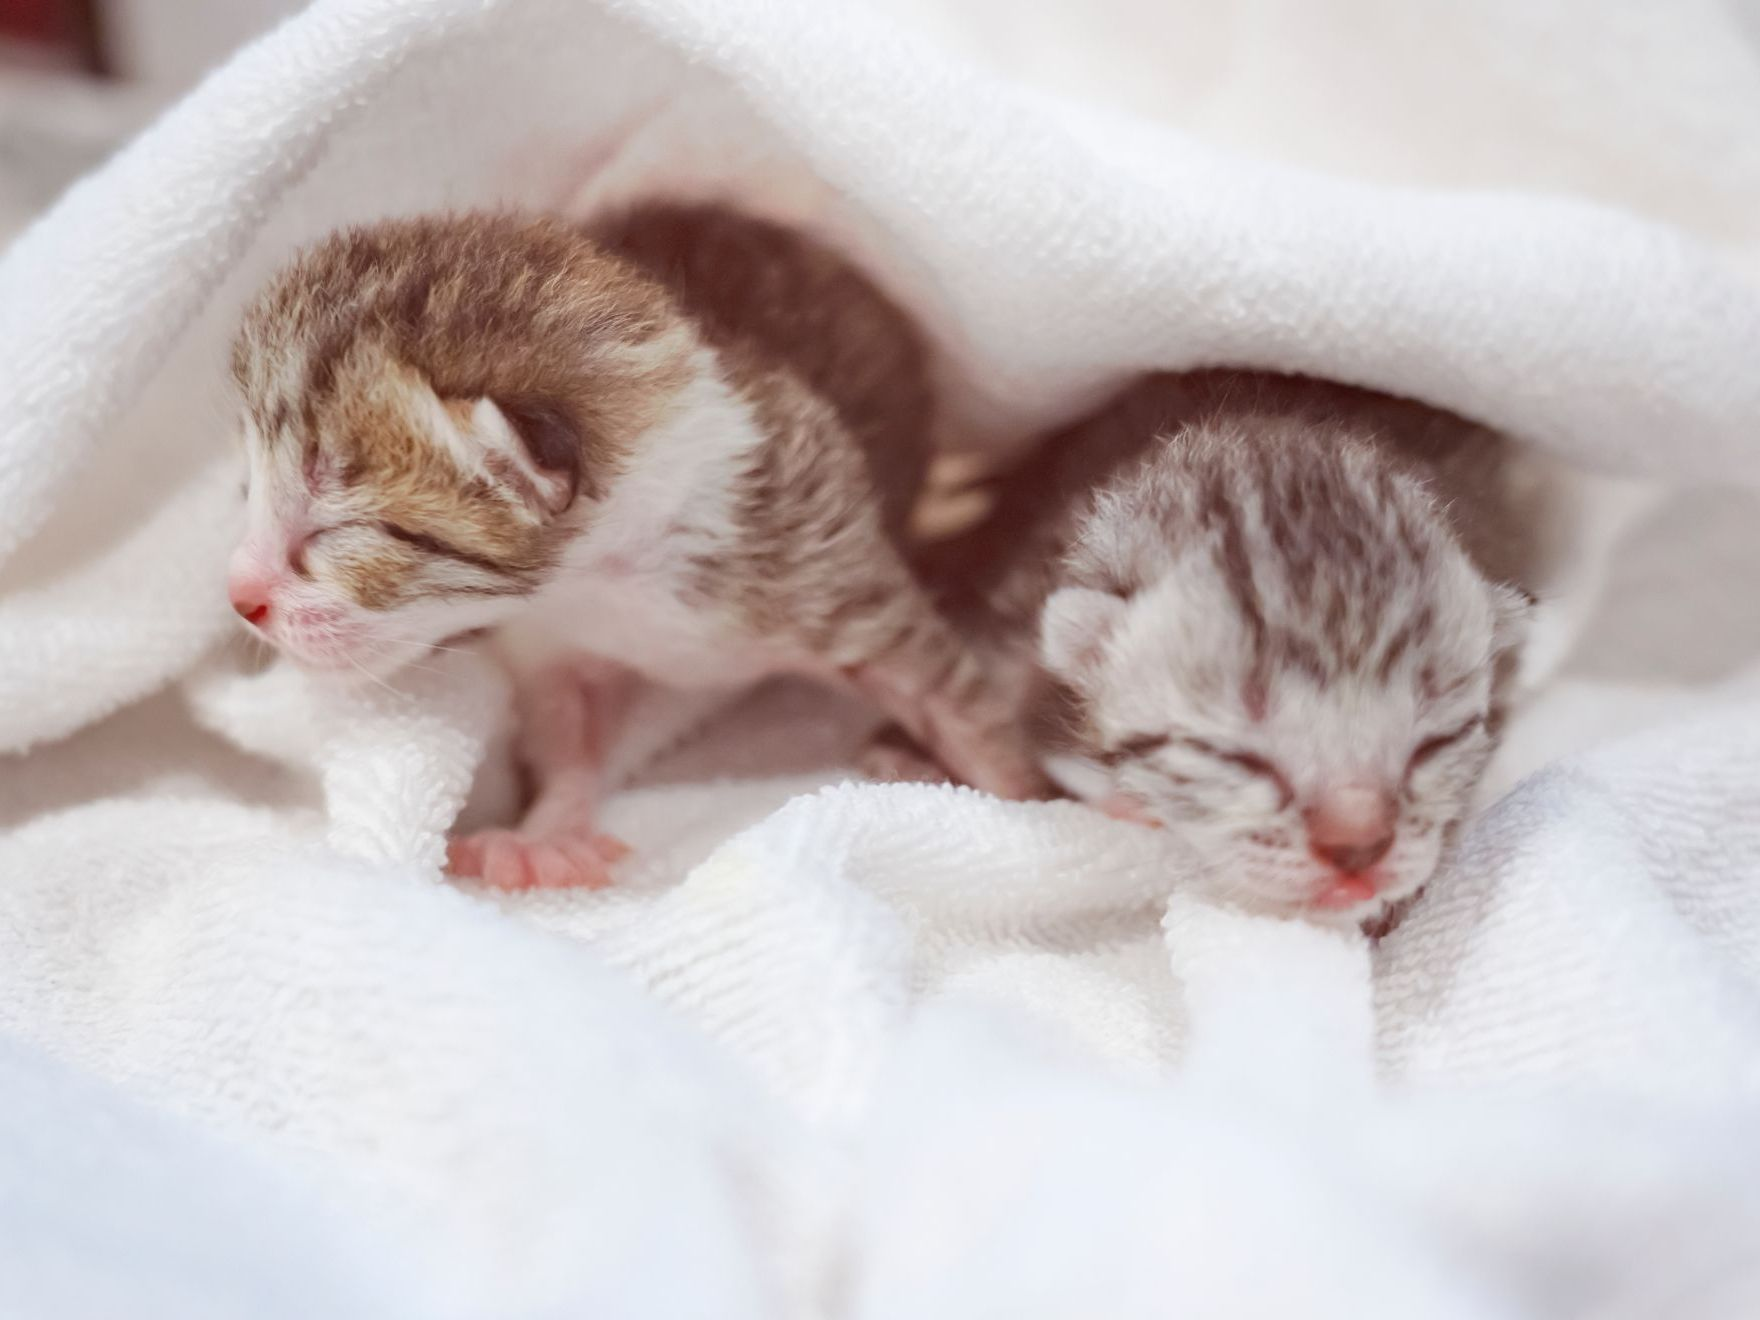 Deux petits chatons scottish fold nouveau-nés dans une couverture blanche